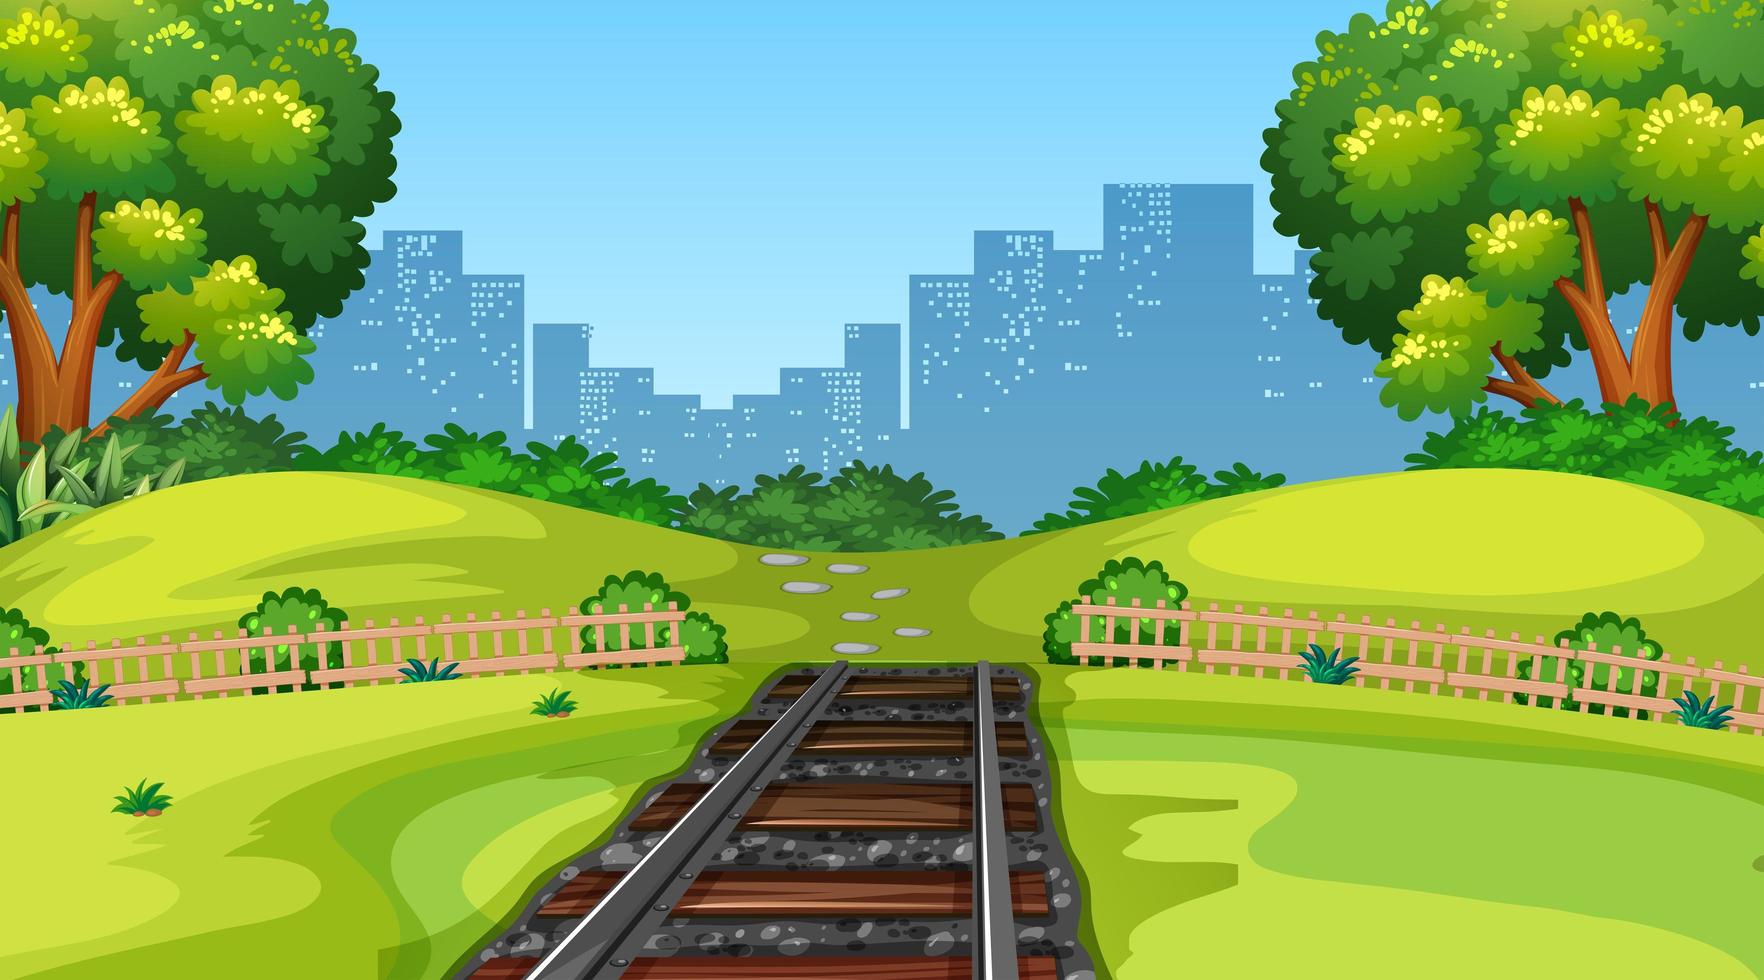 Nature scene landscape with city train tracks vector